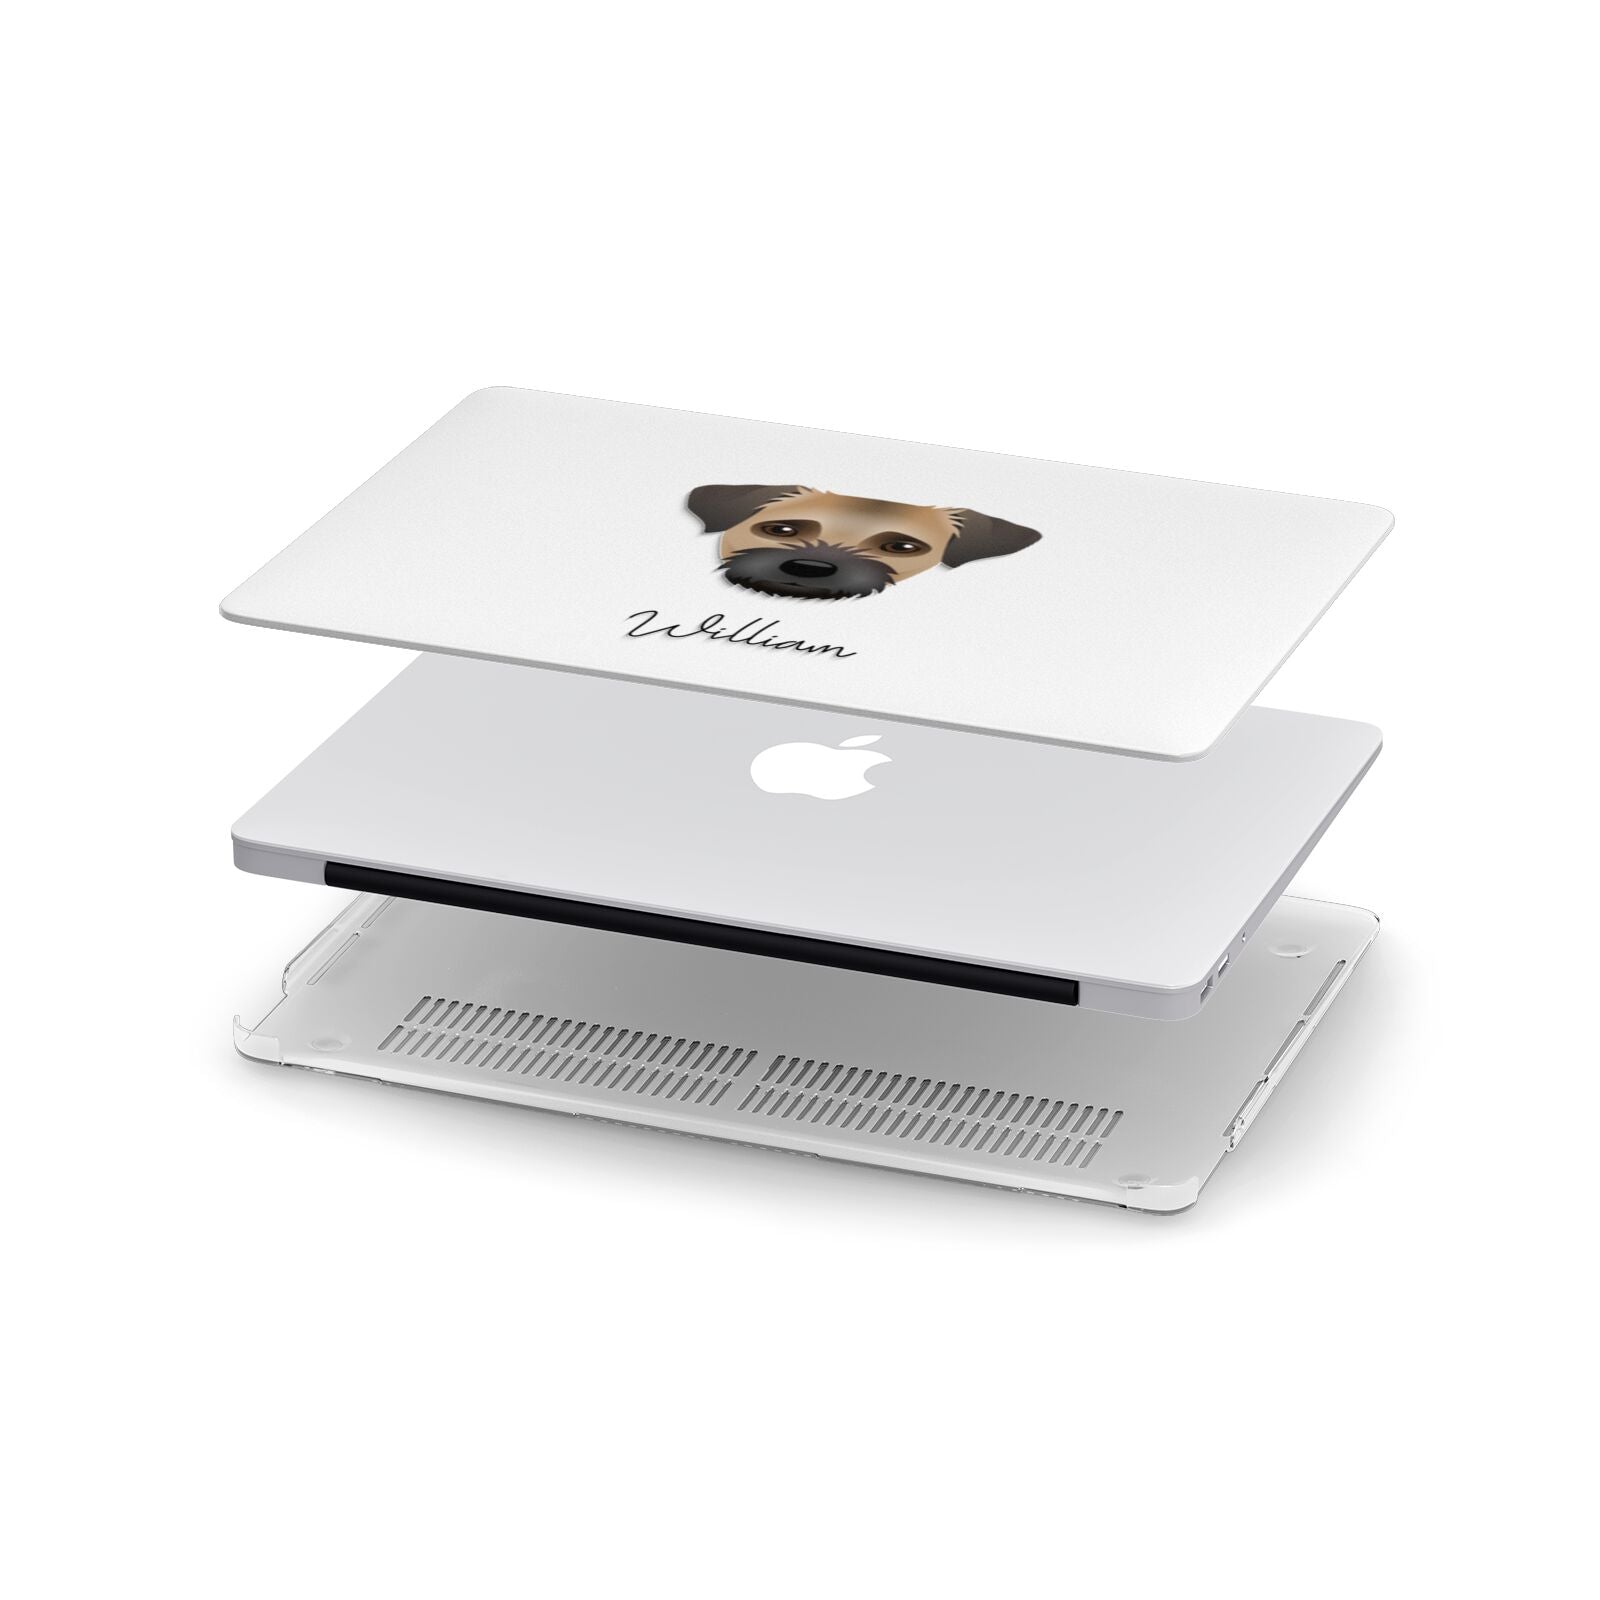 Border Terrier Personalised Apple MacBook Case in Detail